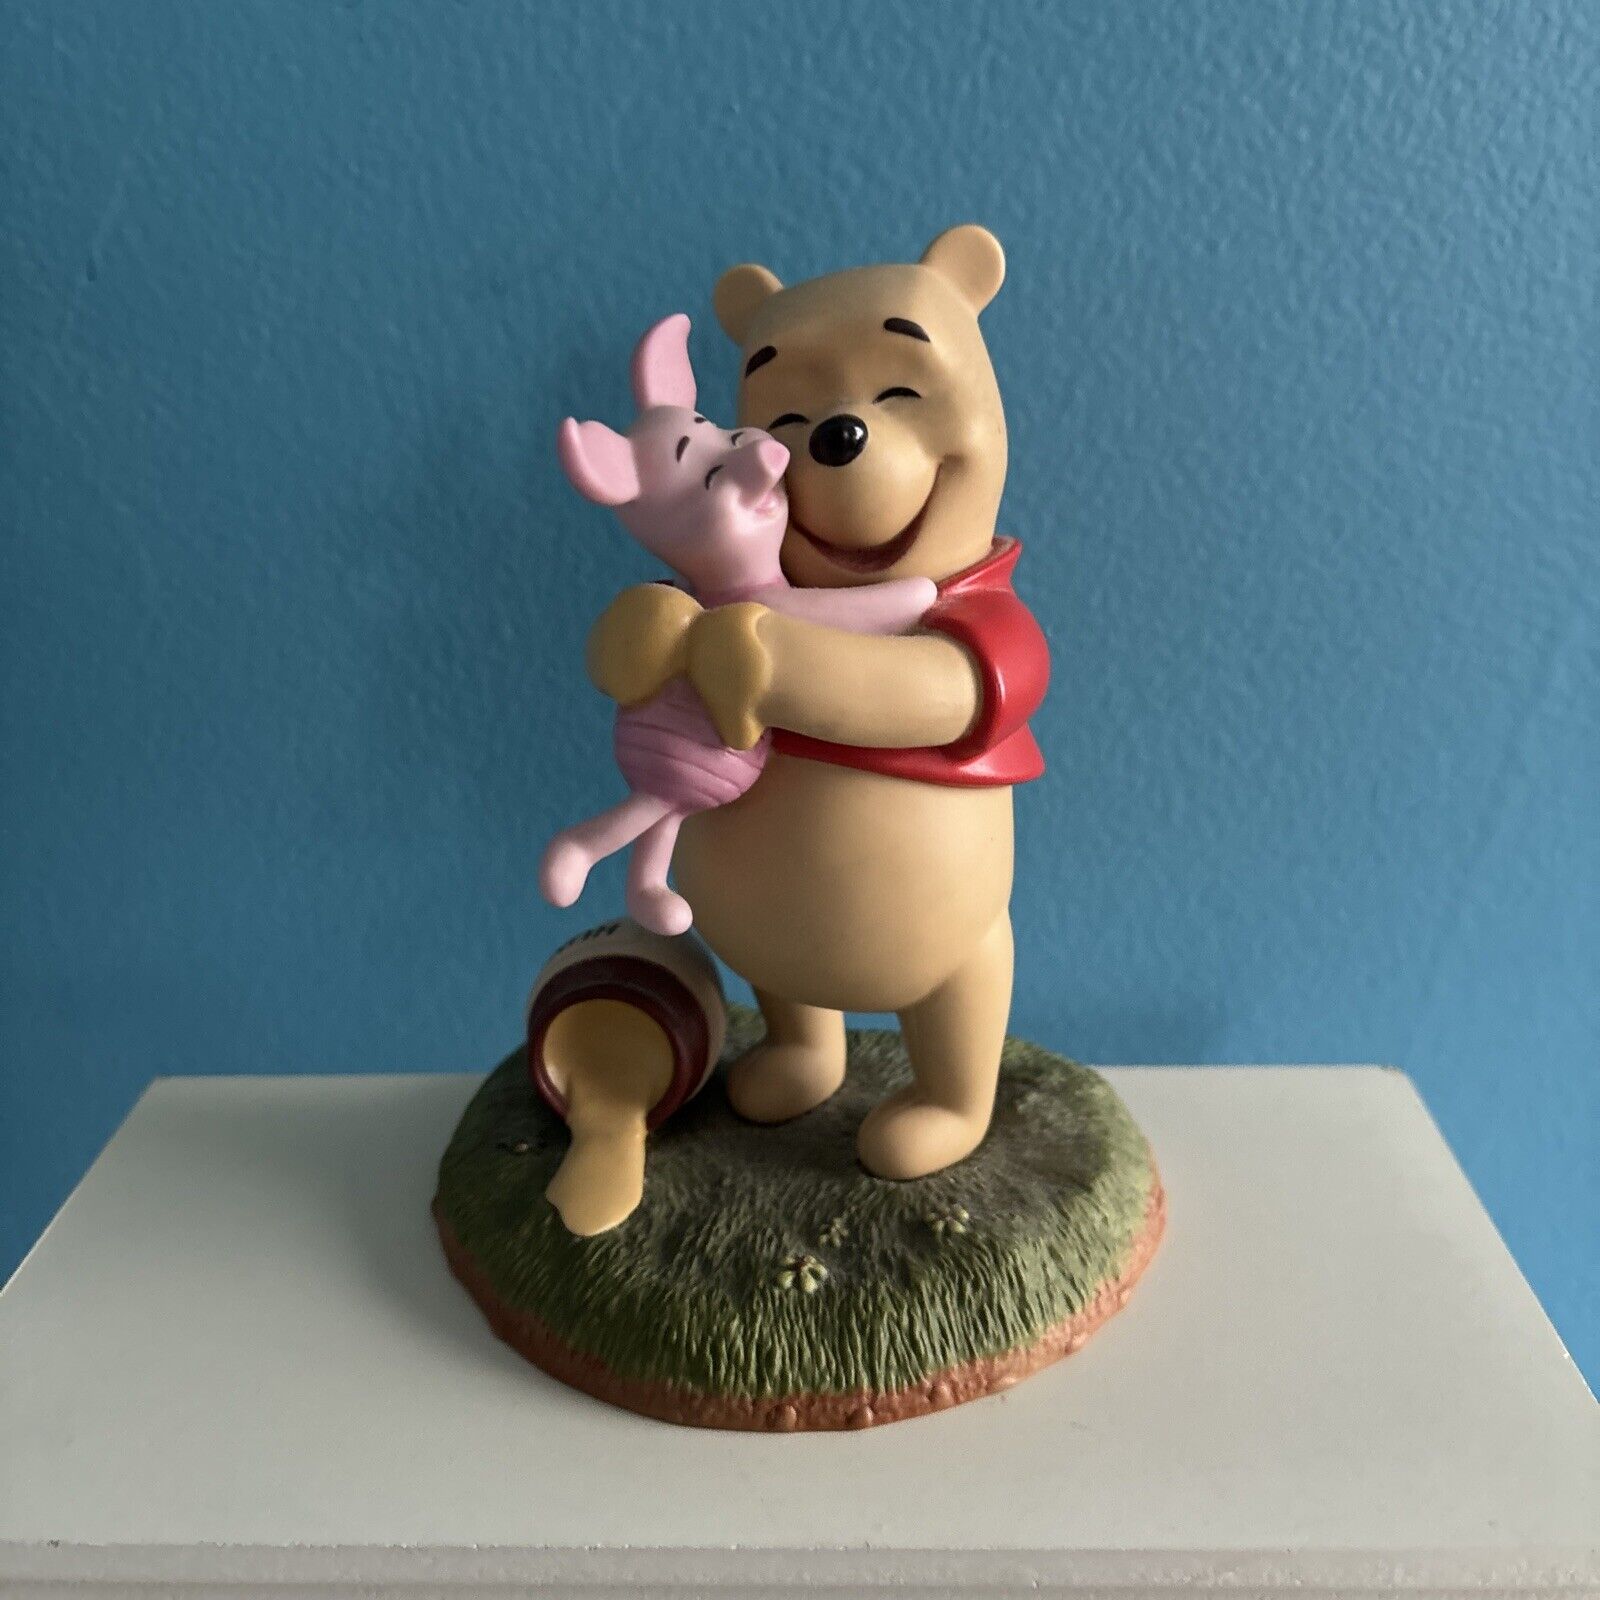 Disney Pooh & Friends “A Good Friend Sticks to You Like Honey” Porcelain Figure